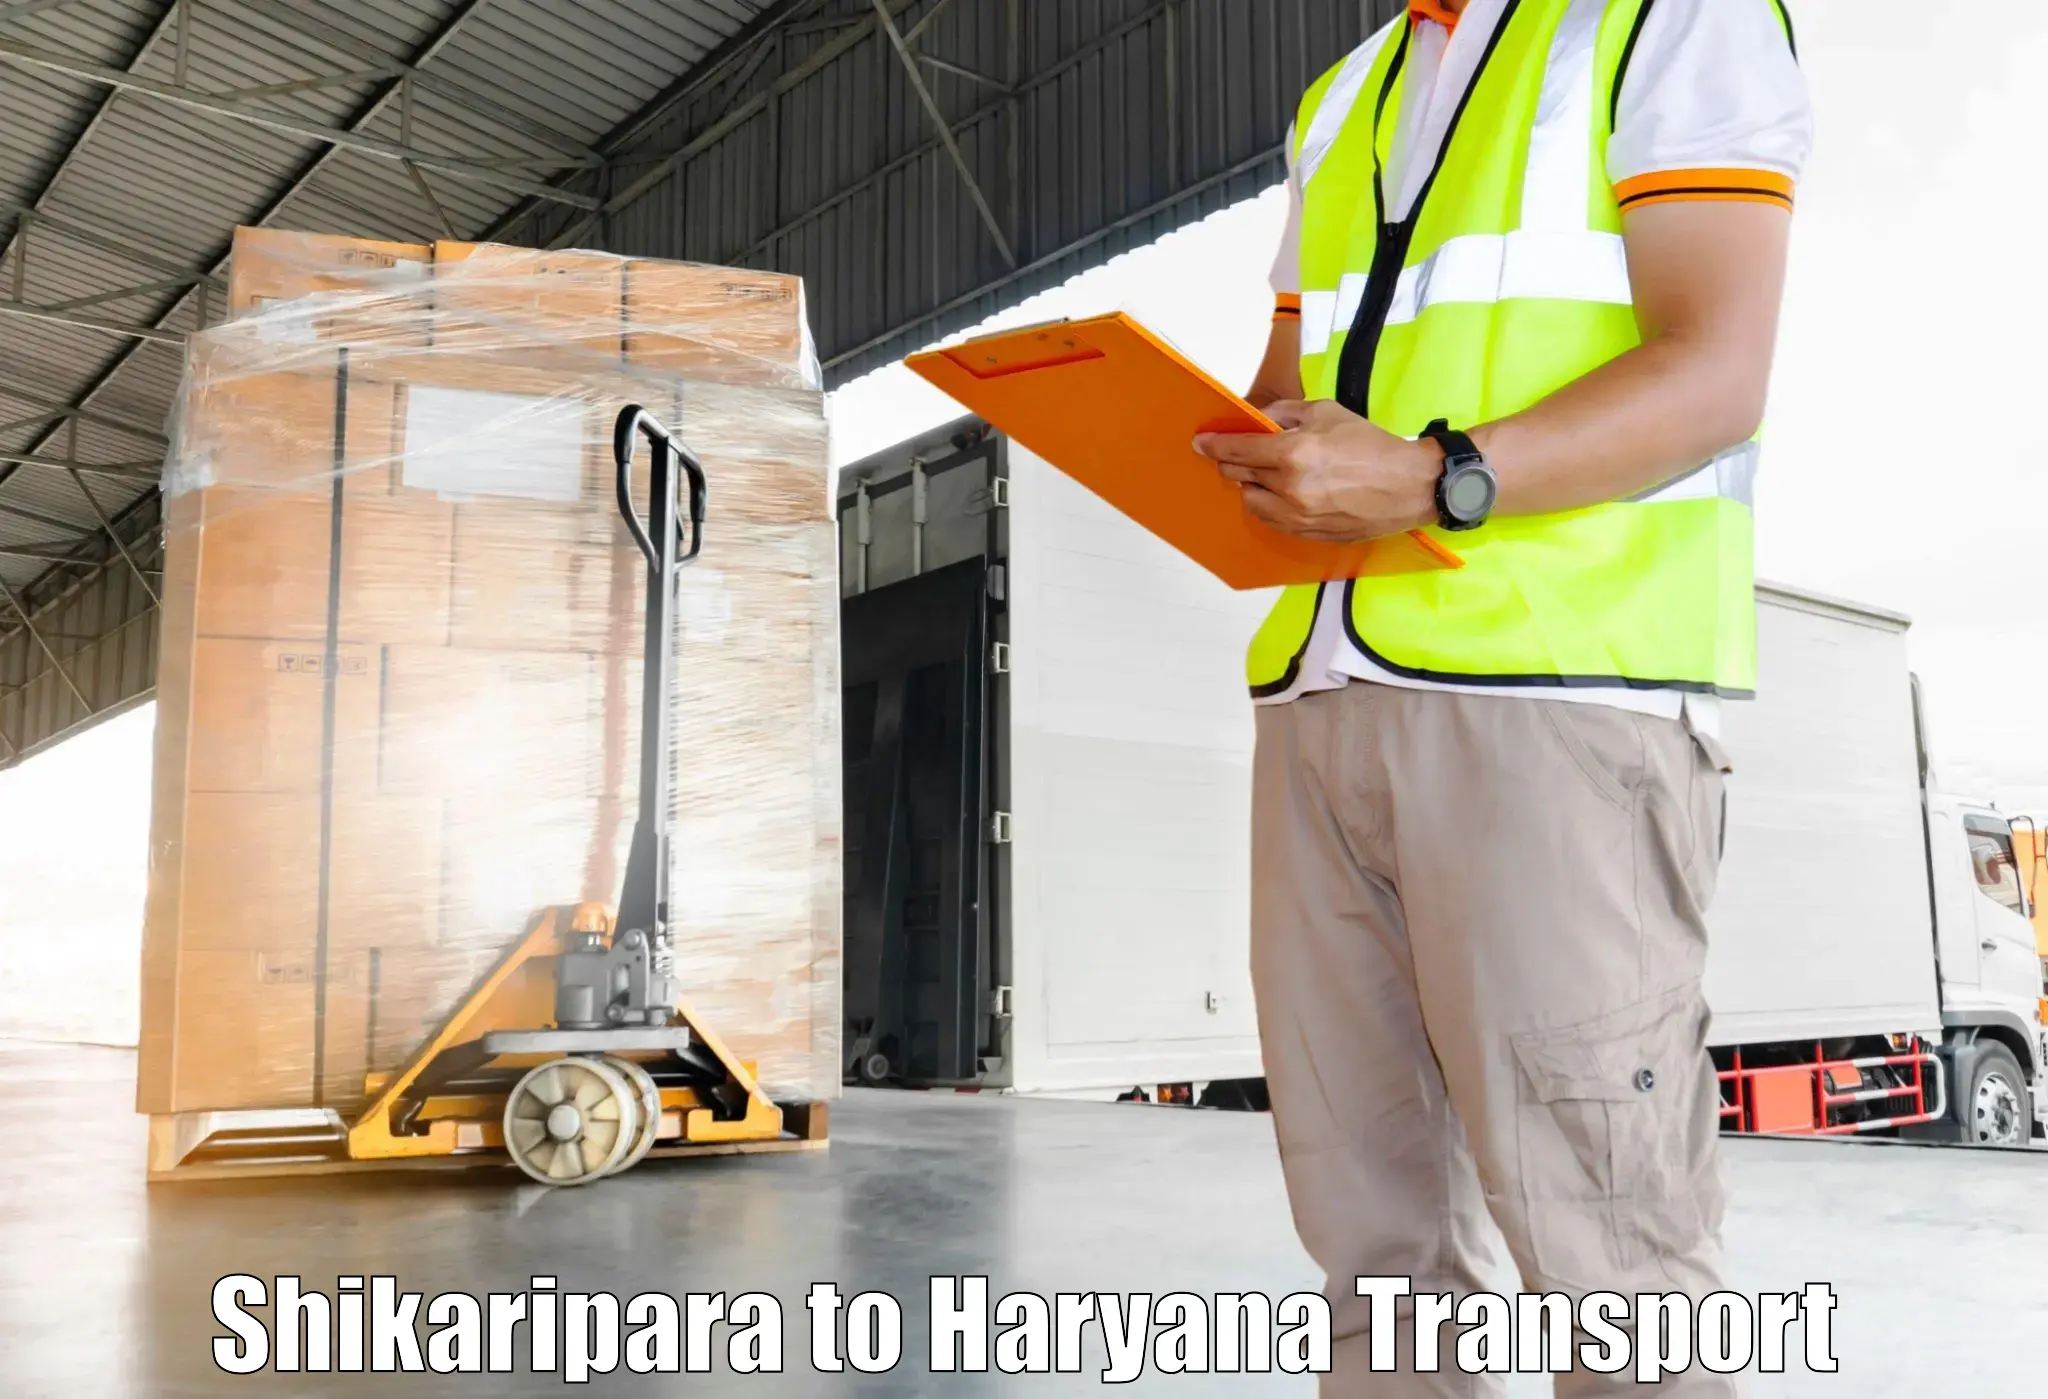 Container transport service Shikaripara to Chirya